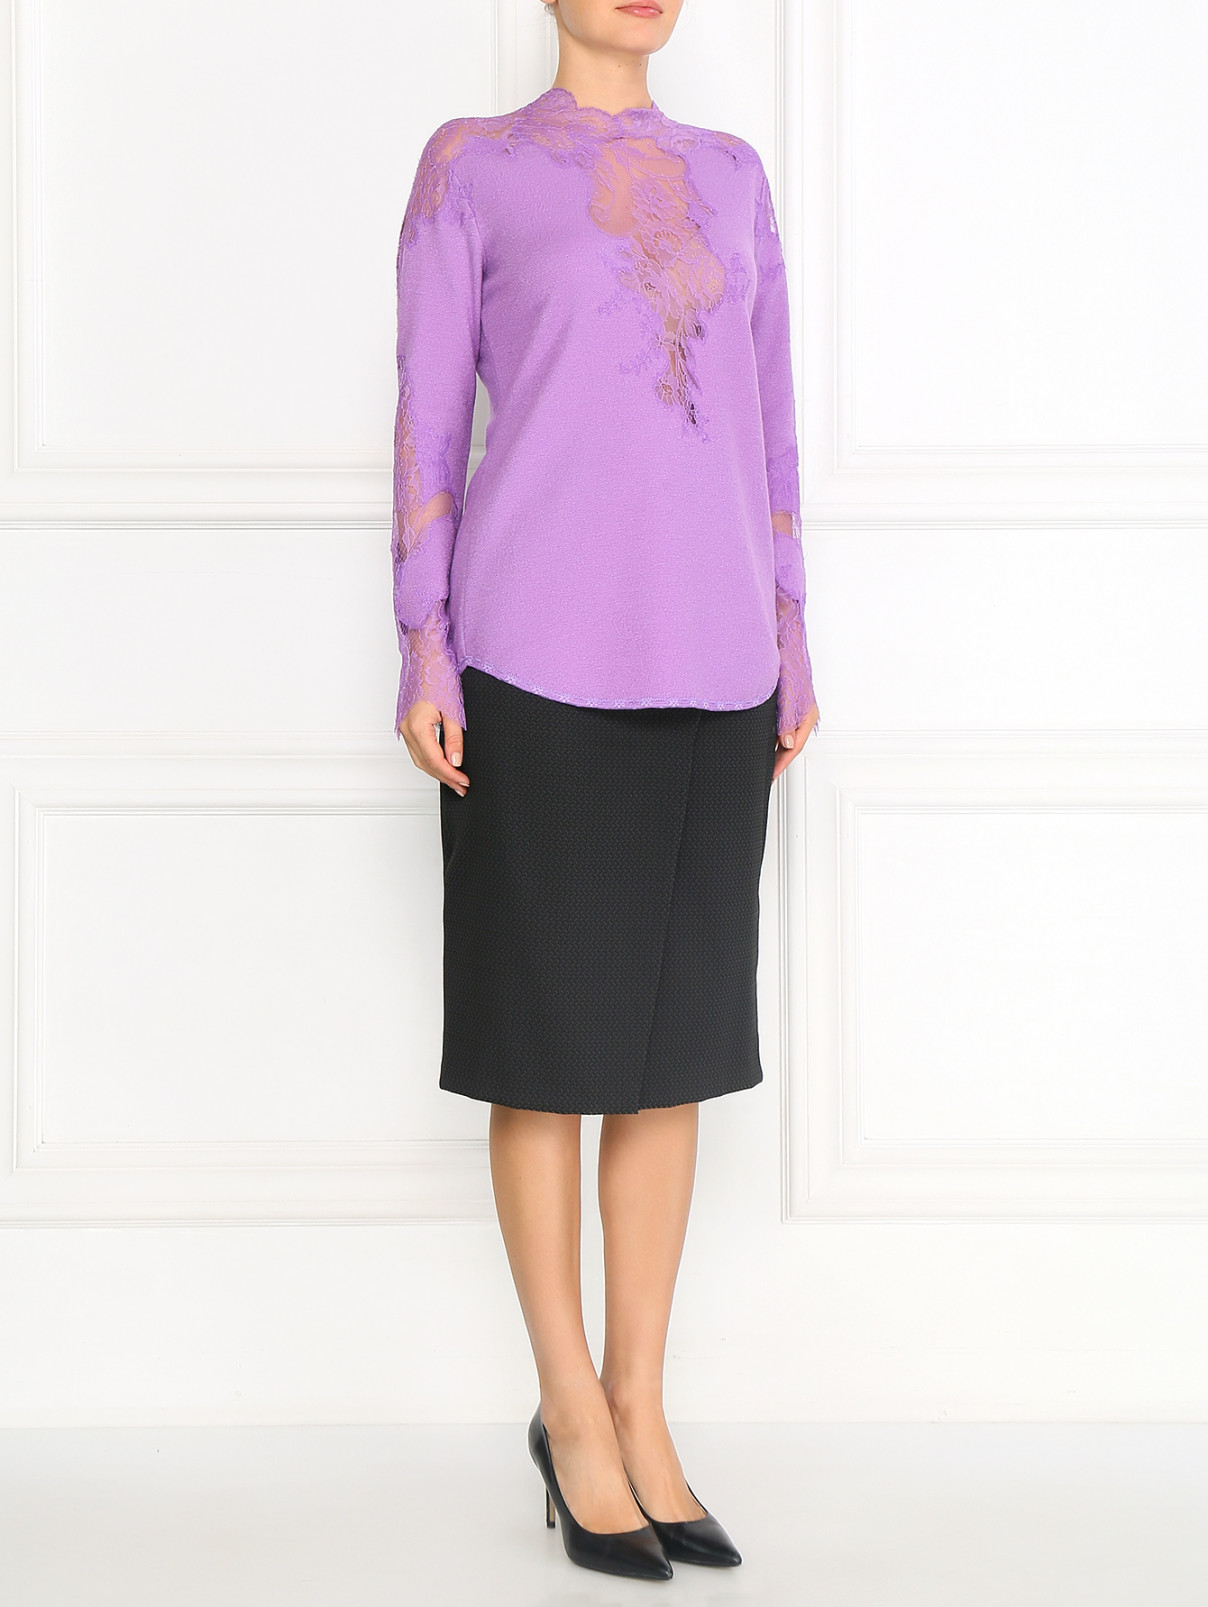 Джемпер из шерсти и шелка с отделкой из кружева Ermanno Scervino  –  Модель Общий вид  – Цвет:  Фиолетовый